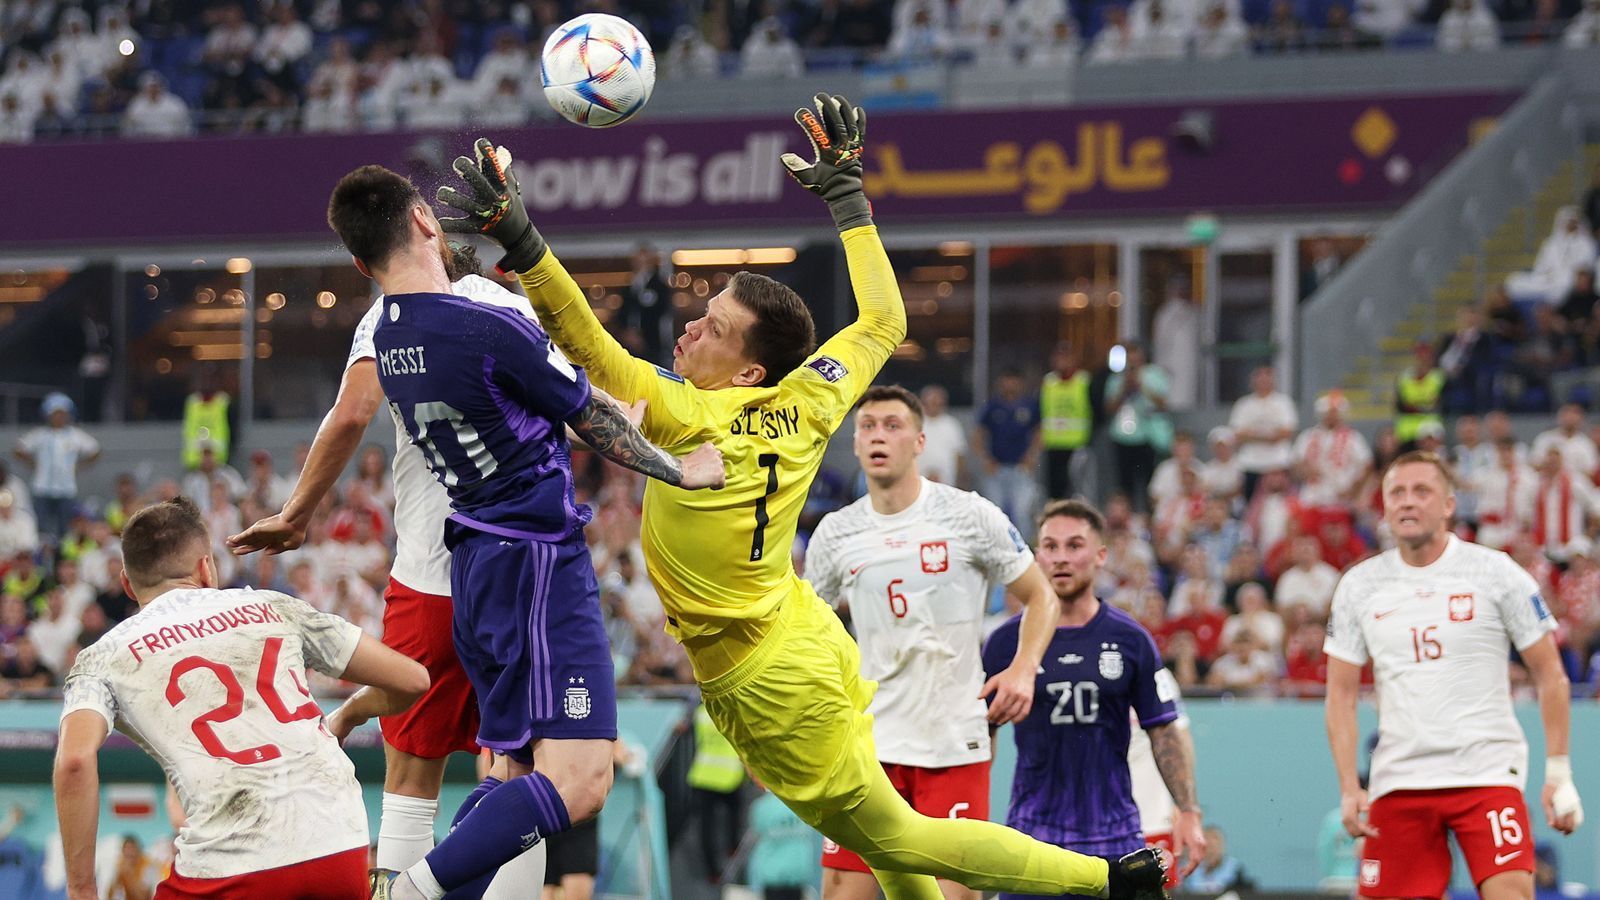 
                <strong>Star-Watch: So lief das Duell Messi vs. Lewandowski</strong><br>
                In der 36. Minute versucht Polens Torwart Wojciech Szczesny eine Flanke abzufangen und berührt dabei Messi im Gesicht.
              